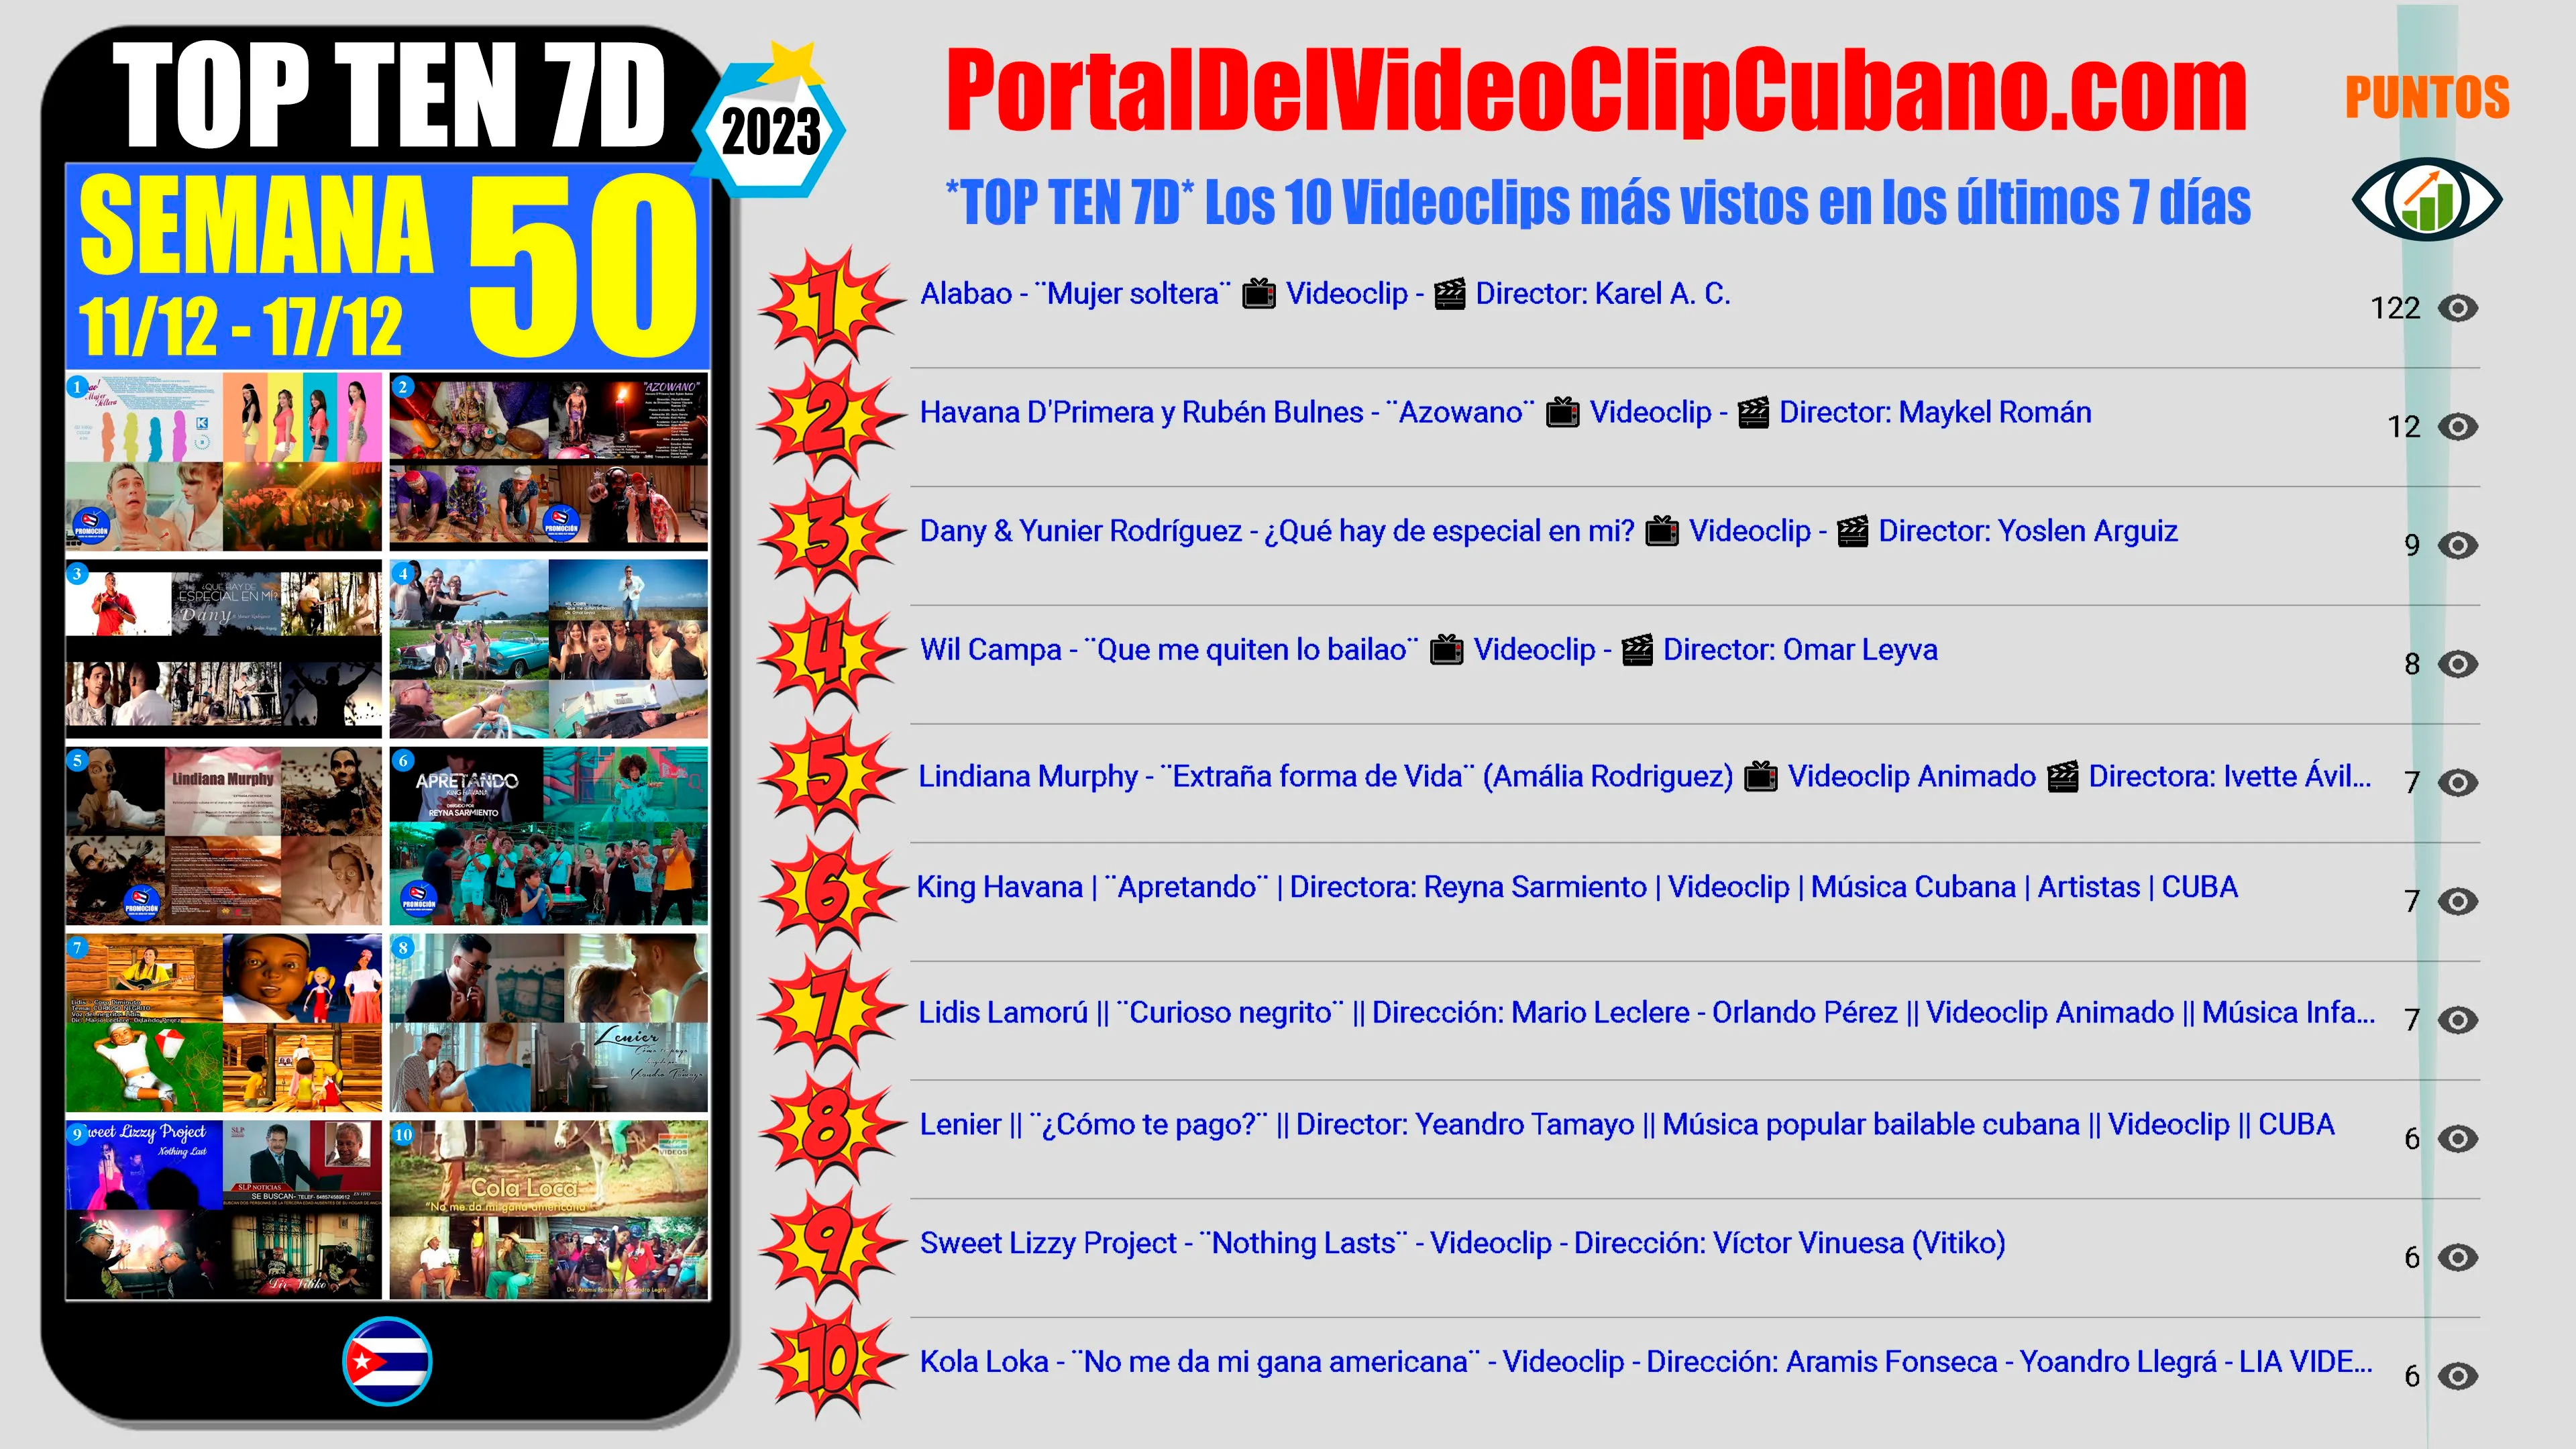 Artistas ganadores del * TOP TEN 7D * con los 10 Videoclips más vistos en la semana 50 (11/12 a 17/12 de 2023) en el Portal Del Vídeo Clip Cubano